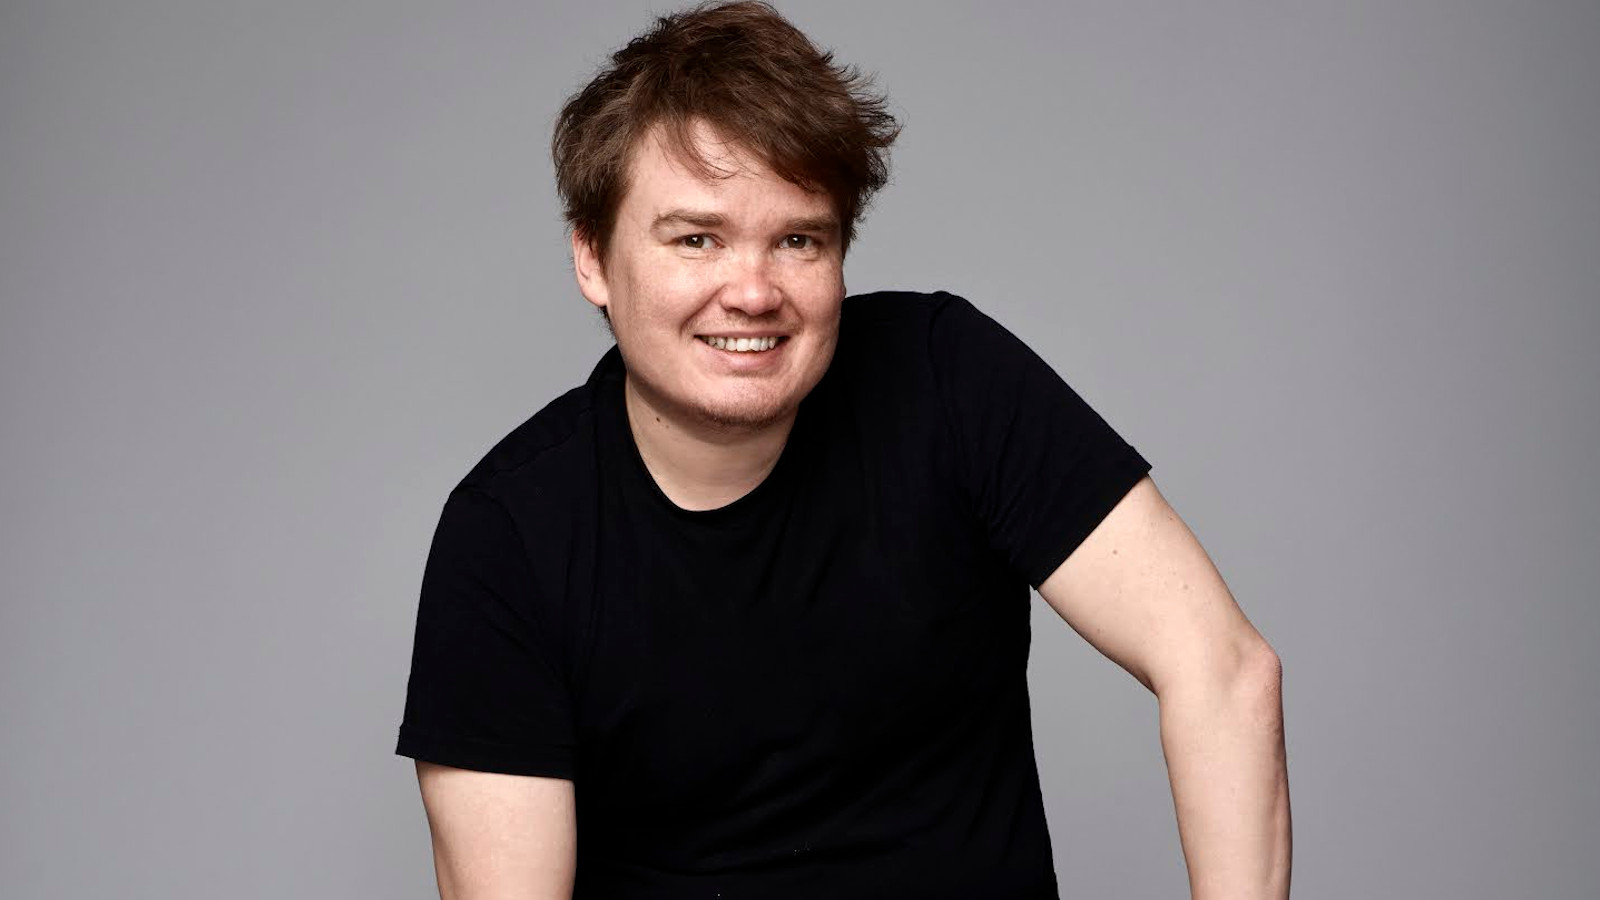 Kuvassa on Antti Heikkisen puolivartalokuva istumassa mustassa t-paidassa.